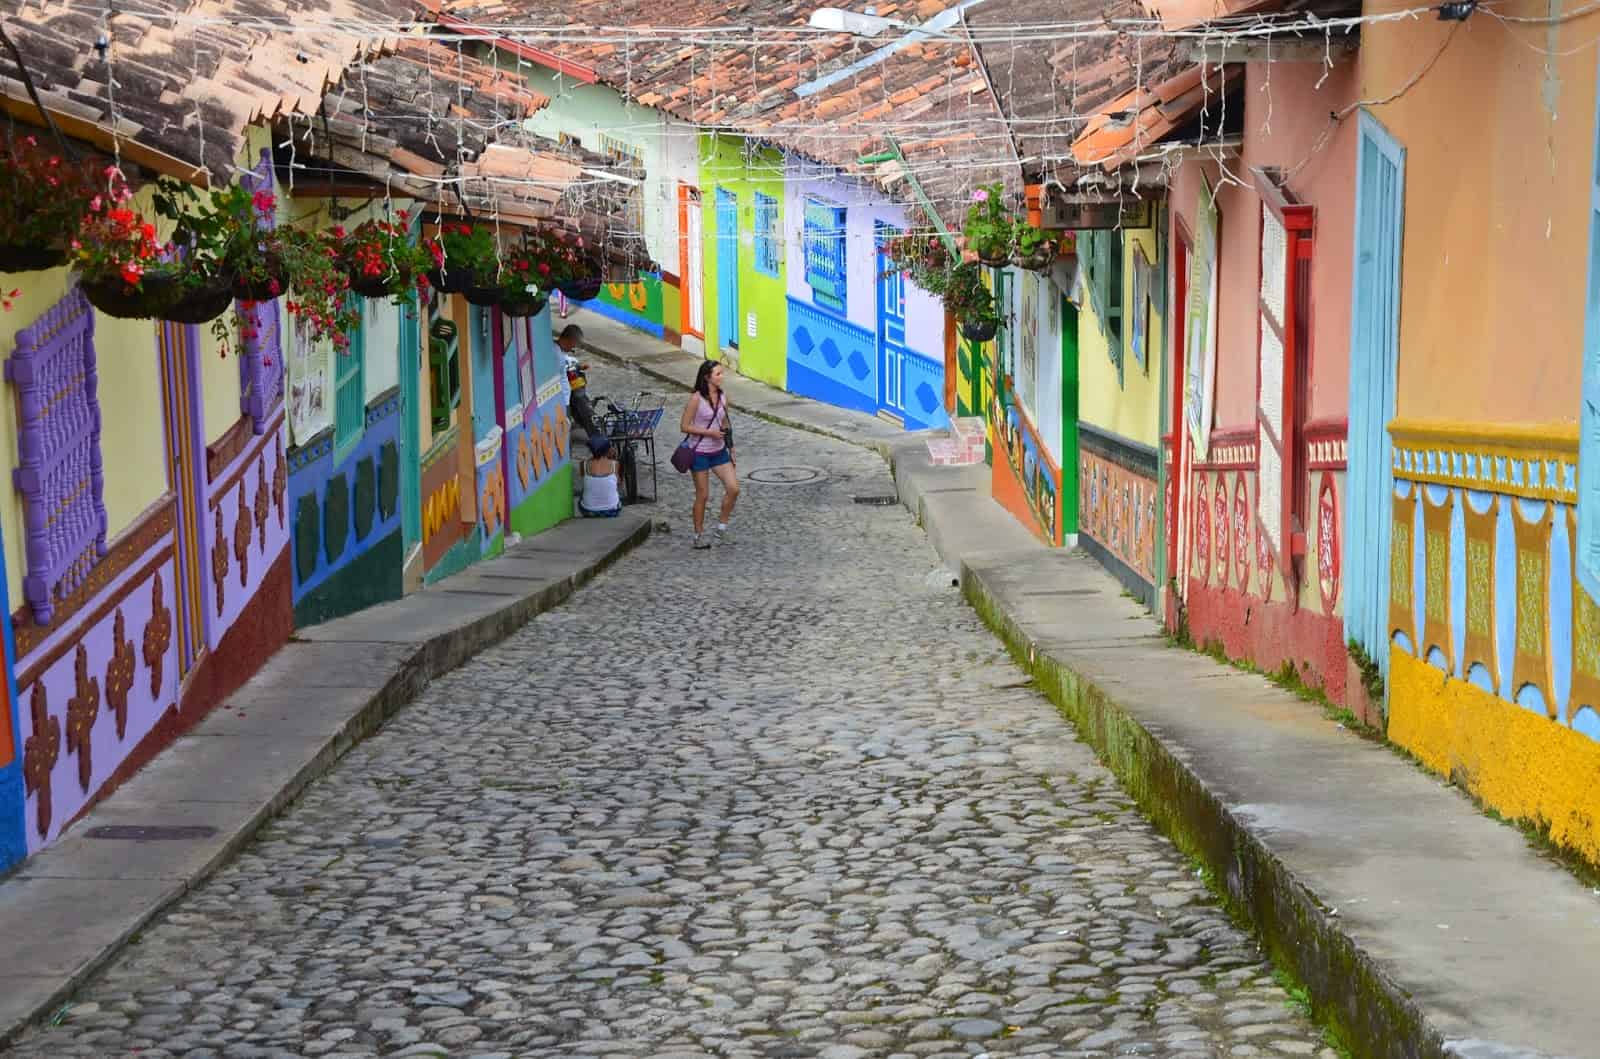 Calle del Recuerdo in Guatapé, Antioquia, Colombia